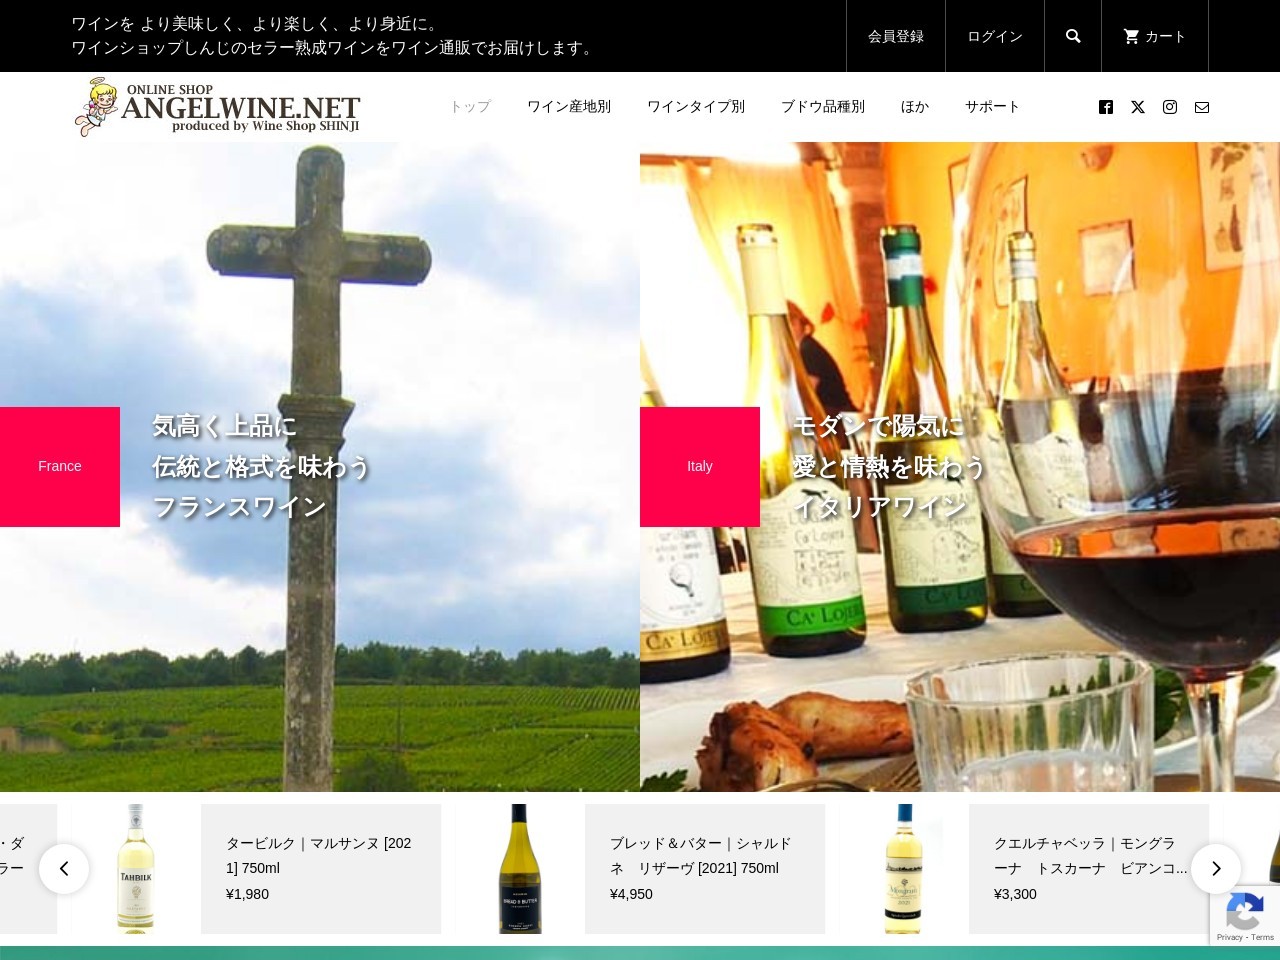 エンジェルワインネット | ワインショップしんじのワイン通販サイト「エンジェルワインネット」